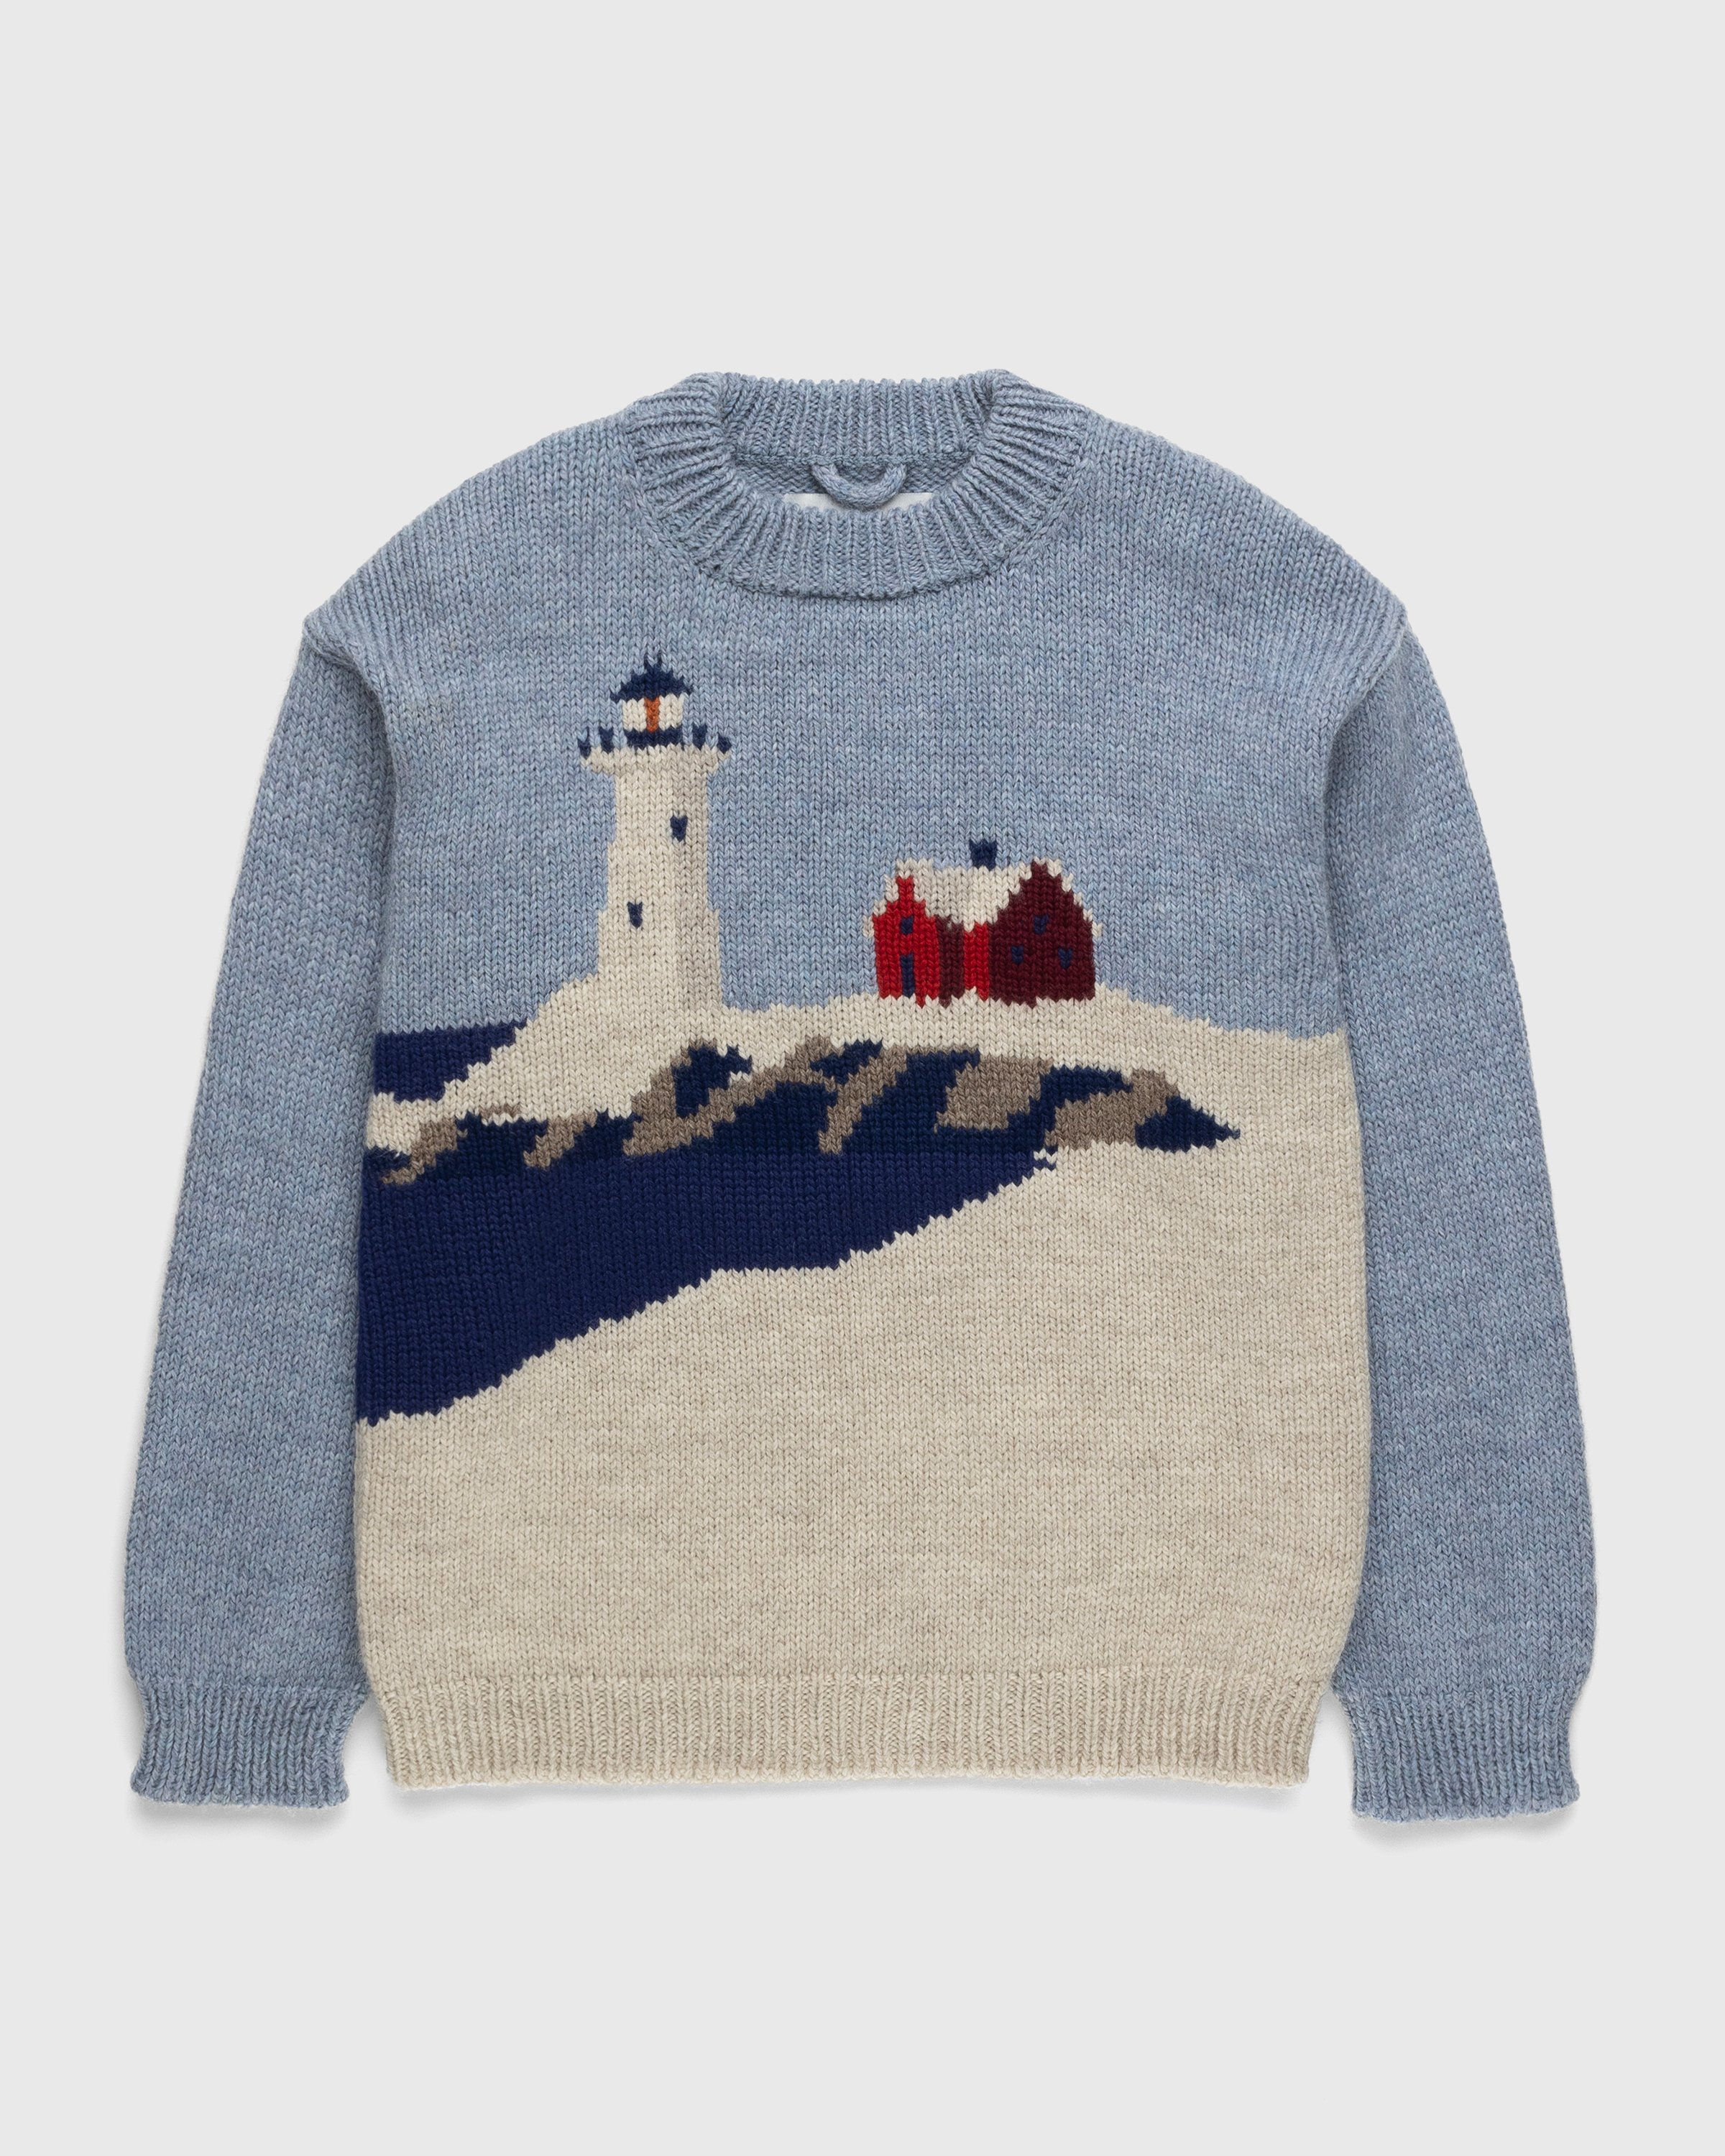 Bode - Highland Lighthouse Sweater Multi - Clothing - Multi - Image 1